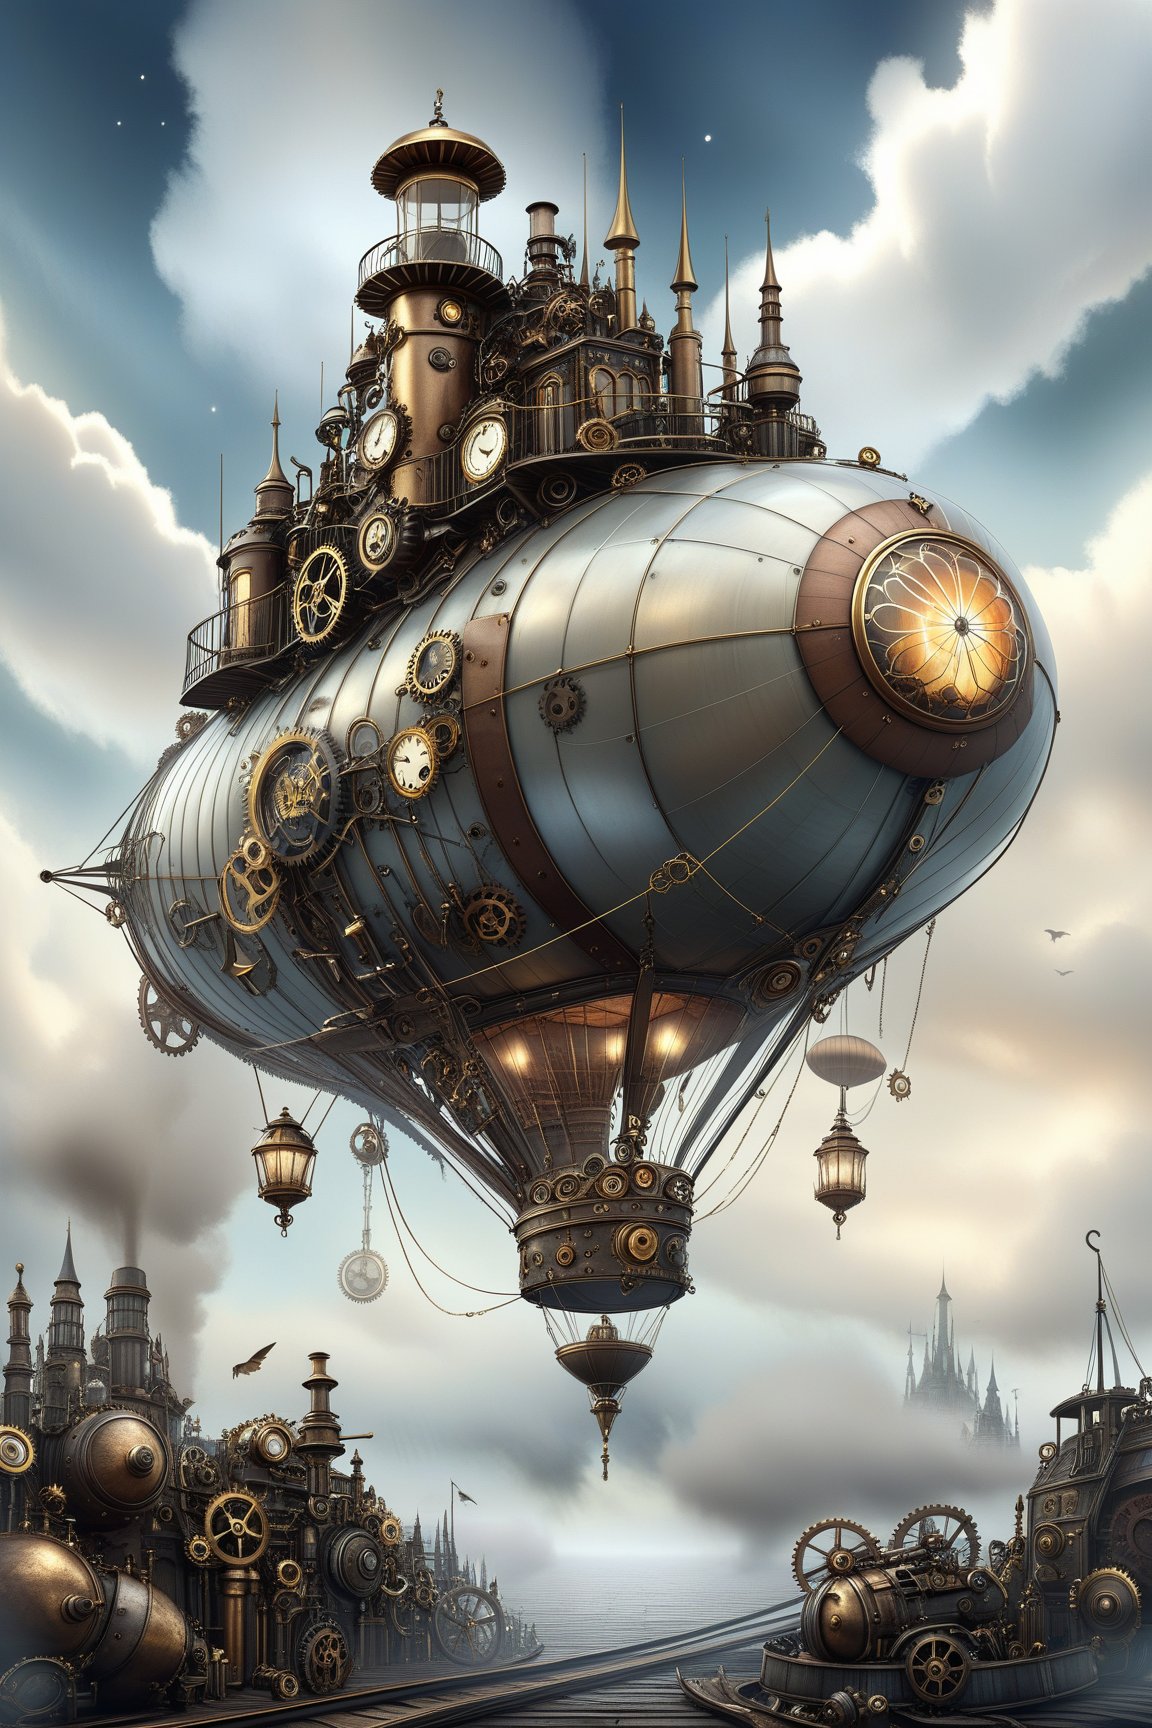 create a beautiful magical steampunk fantasy scene where you can evidence a Un dirigible masivo con velas de vapor y alas de metal, navegando a través de un cielo estrellado surrealista...Mechanical,DonMSt34mPXL